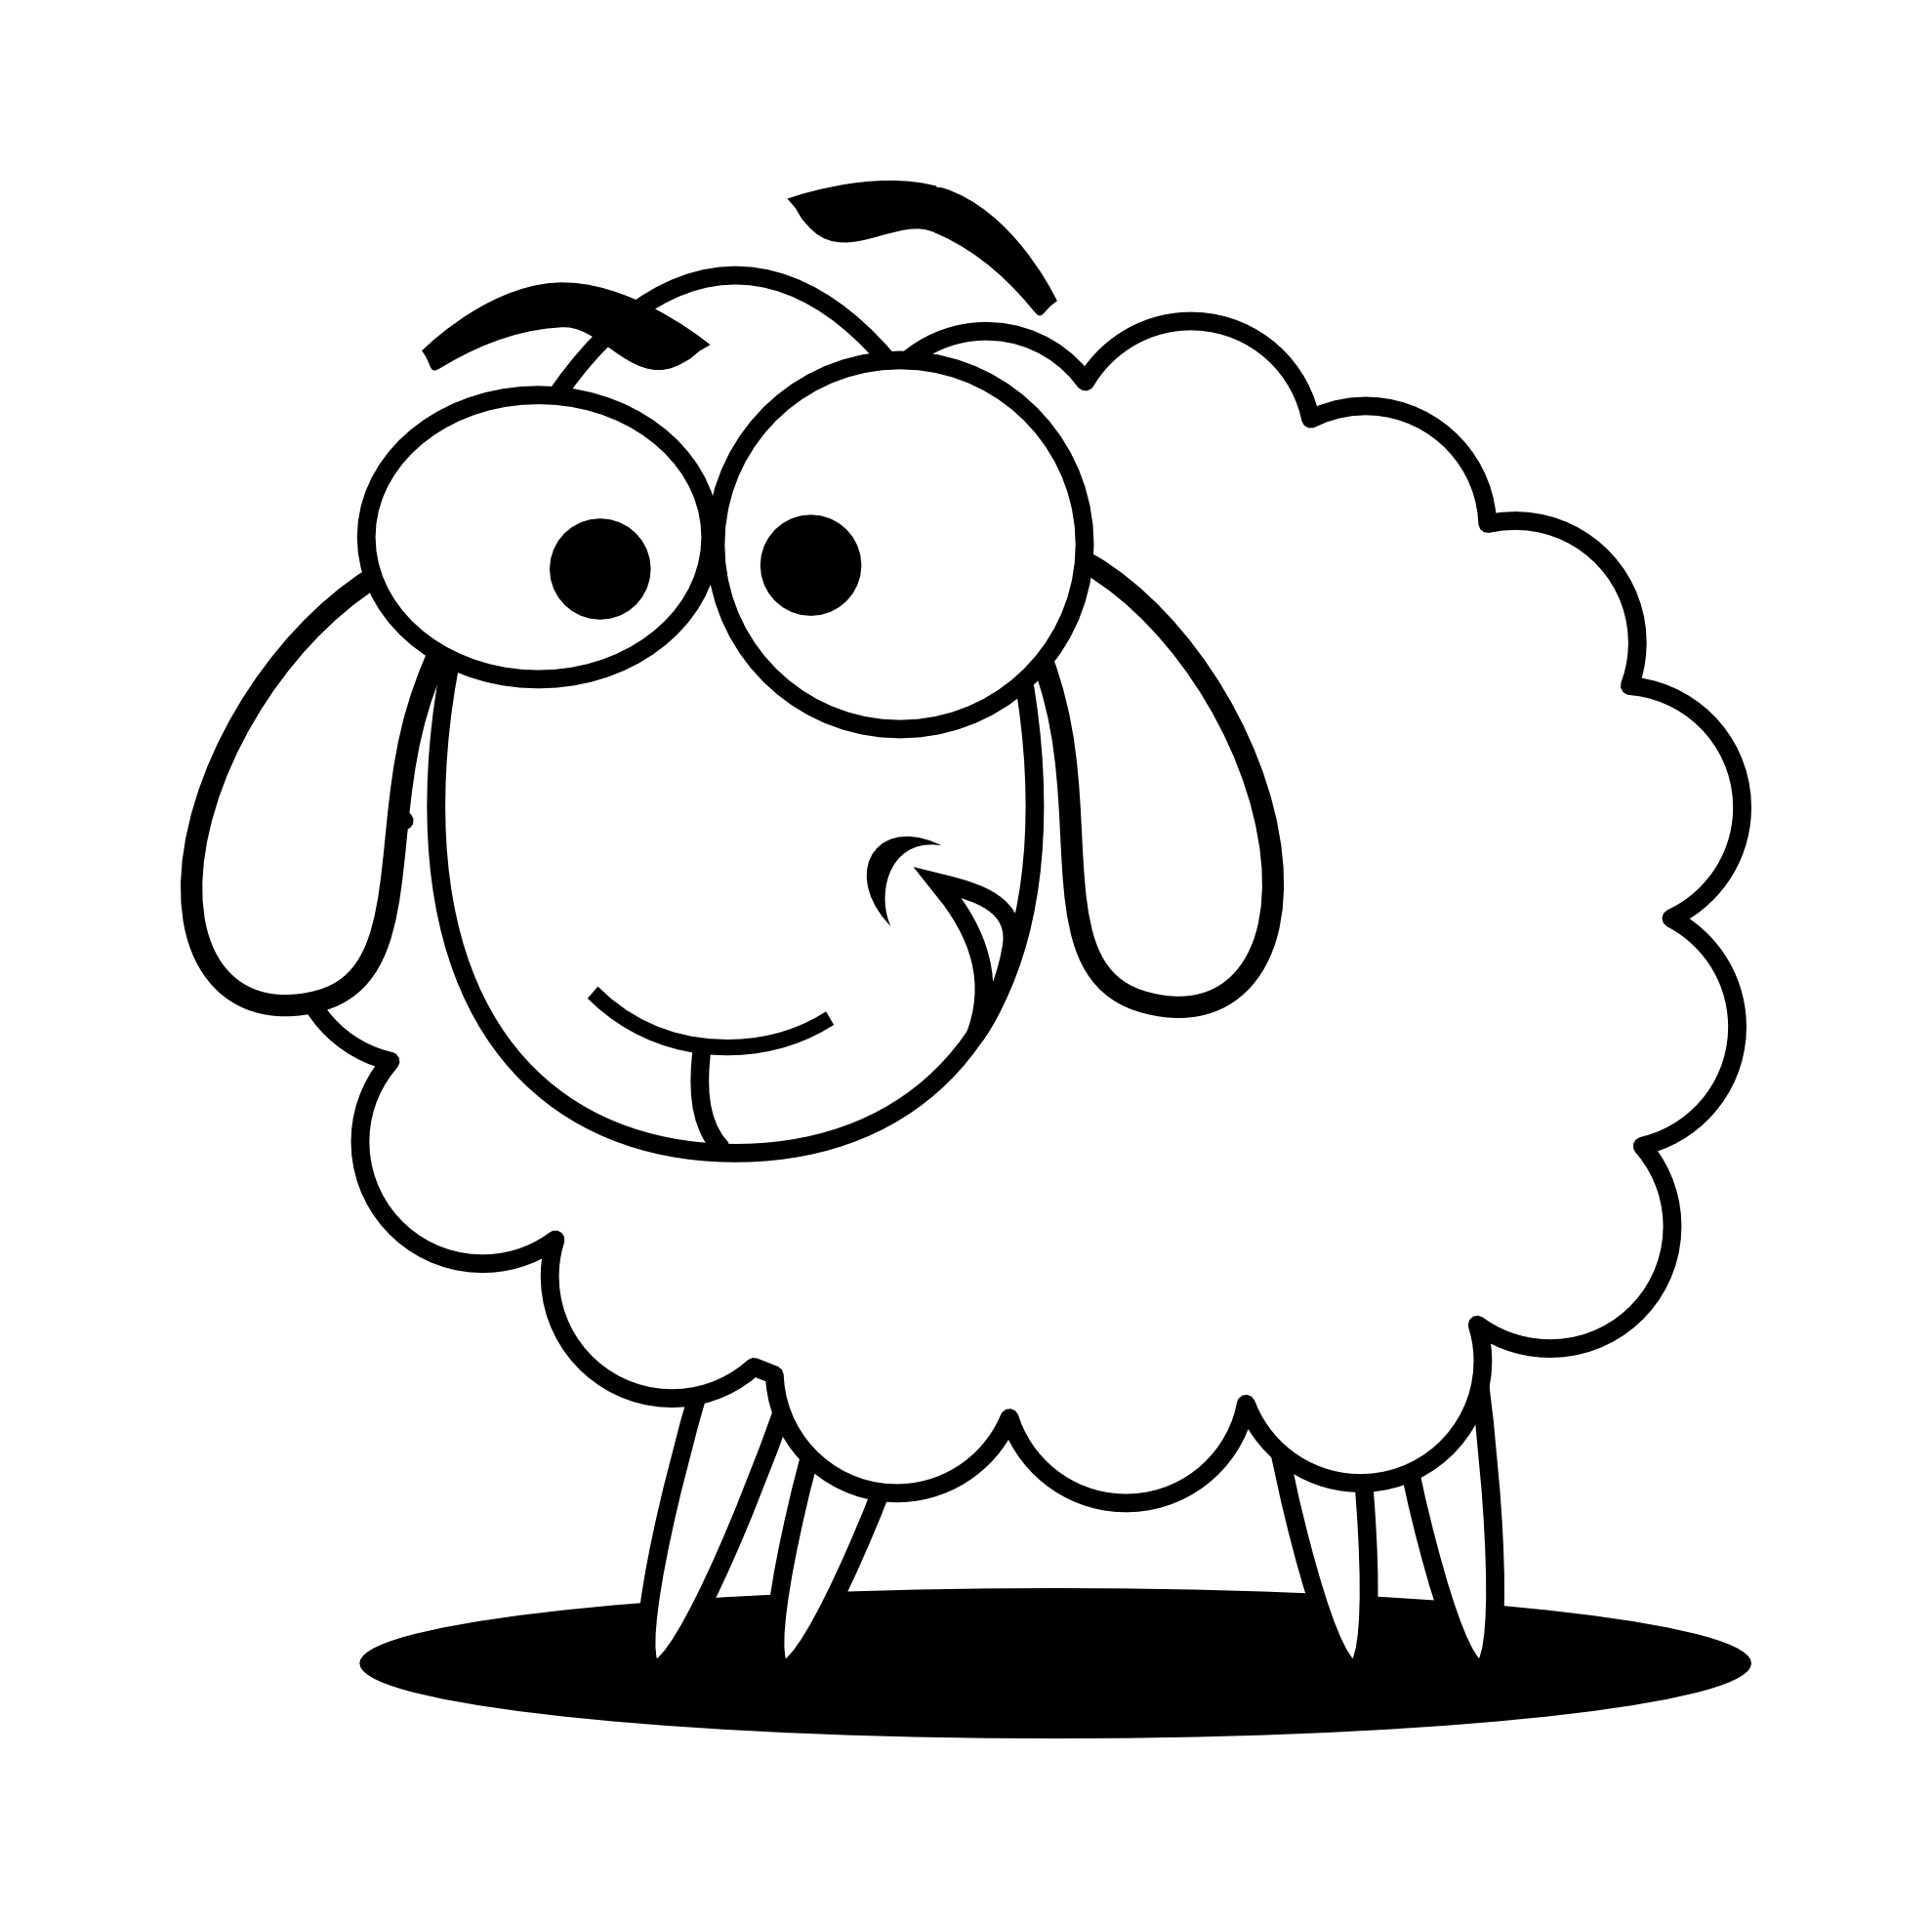 Lamb sheep animal free clipart images